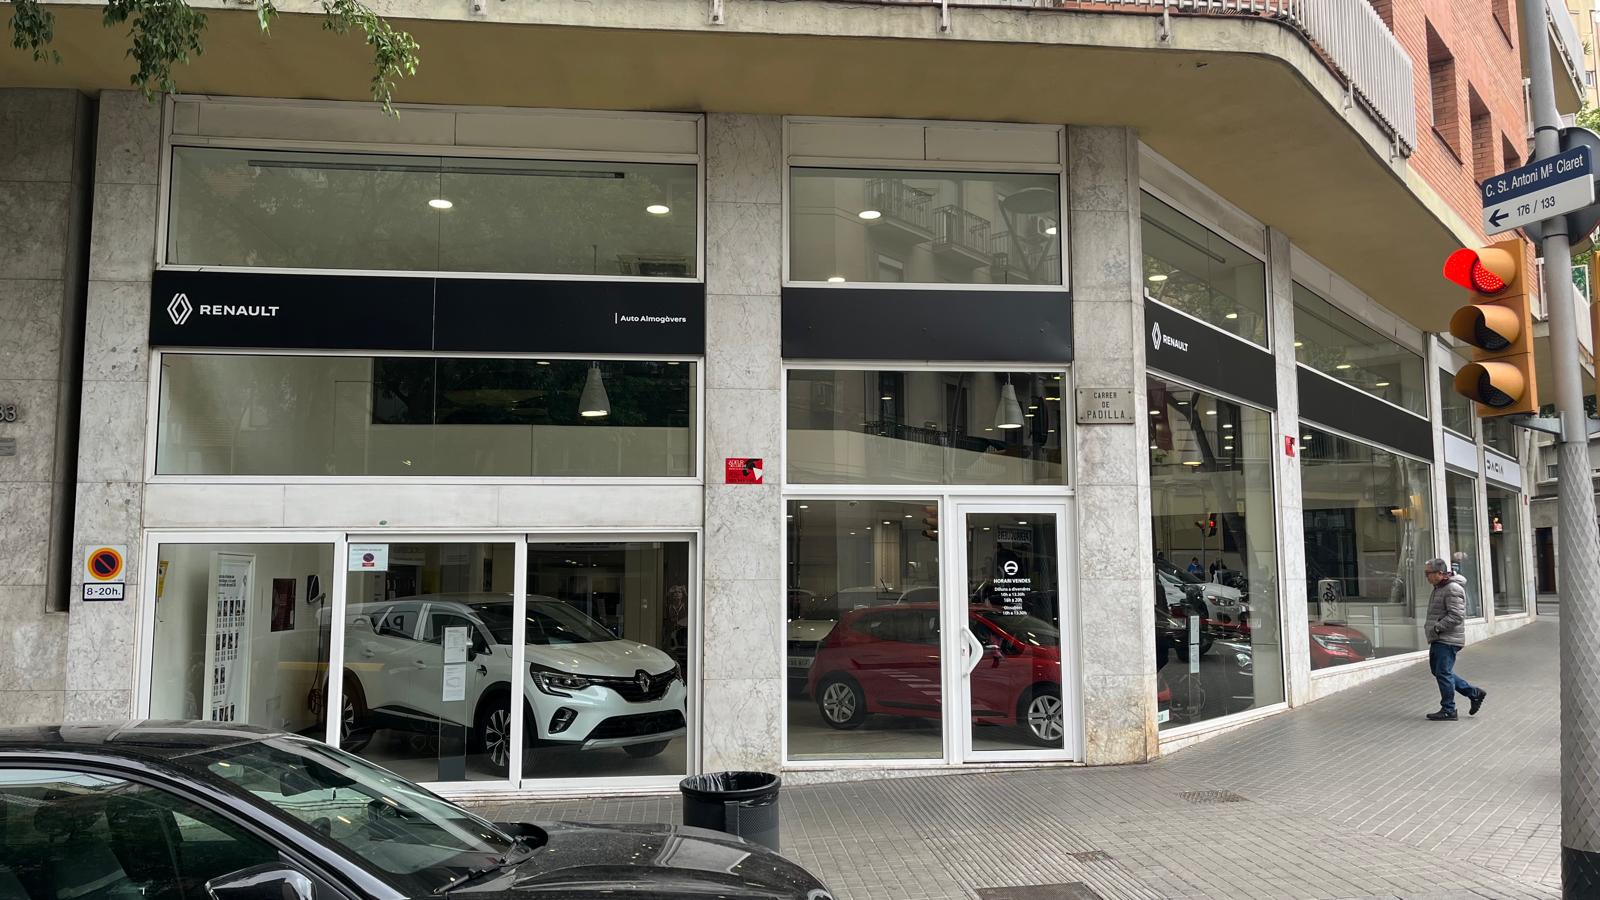 Concesionario Renault Sagrada Familia Barcelona